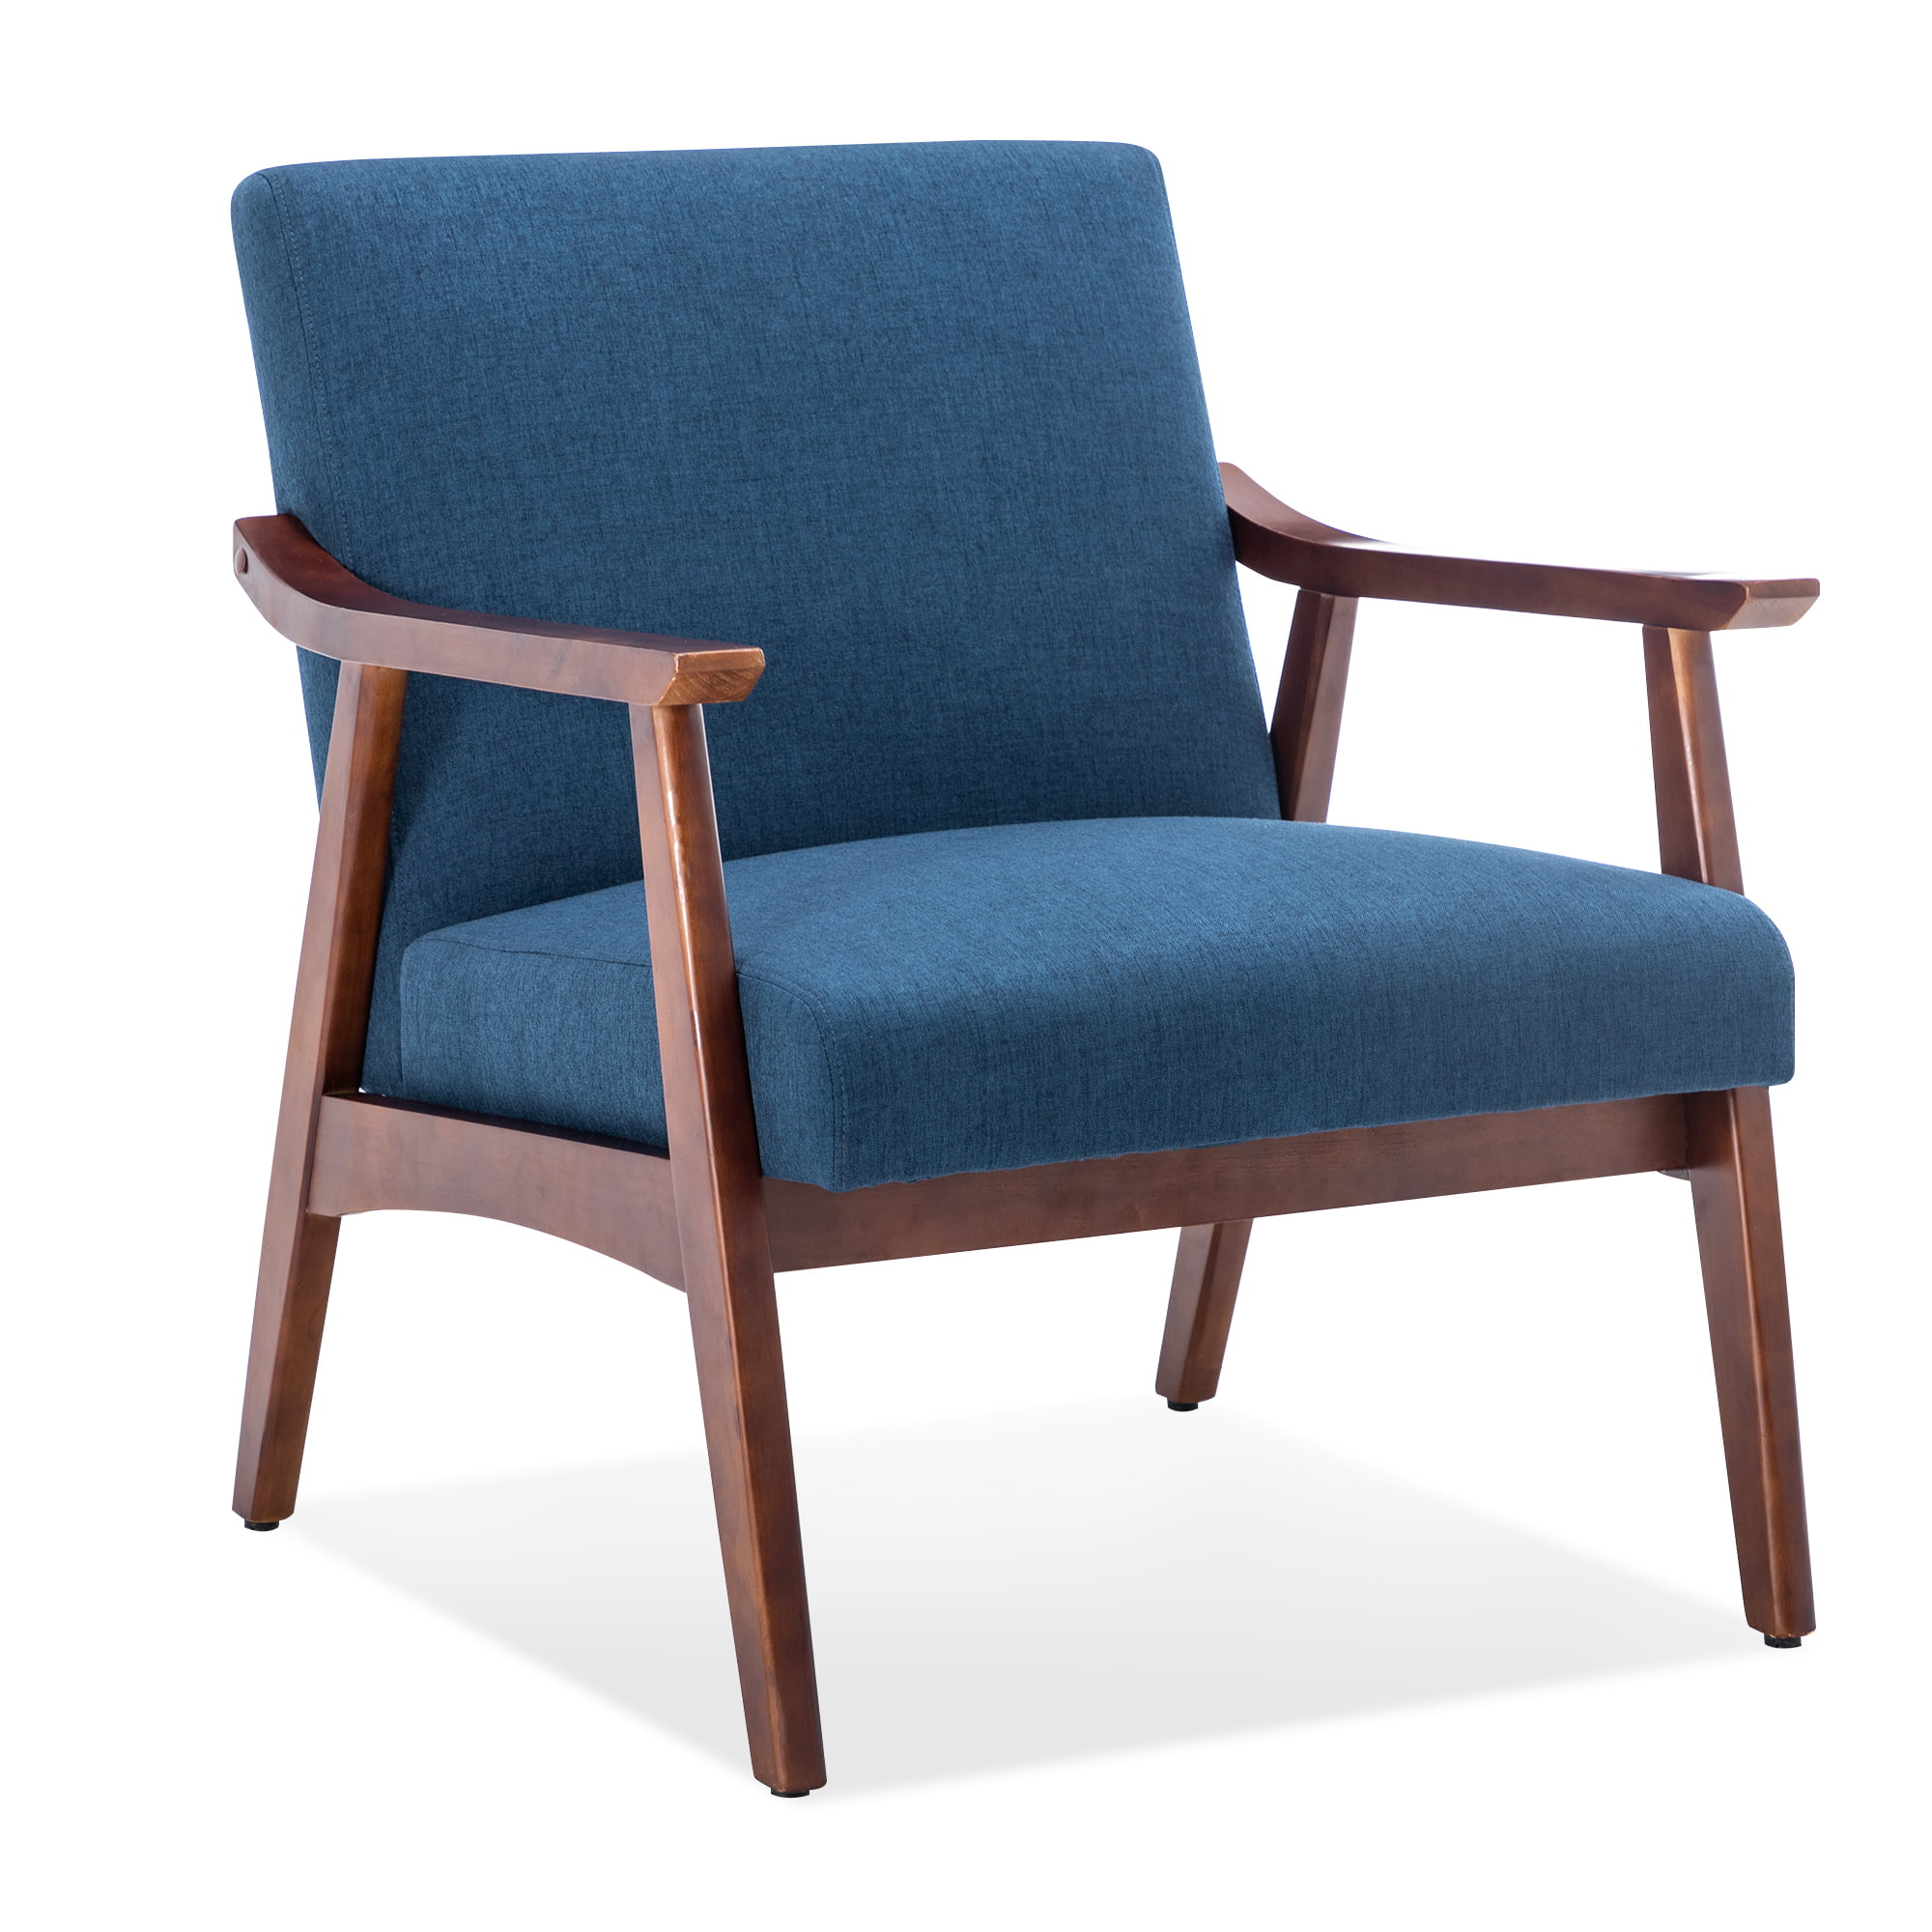 Navy Mid Century Modern Chair - Homedesign